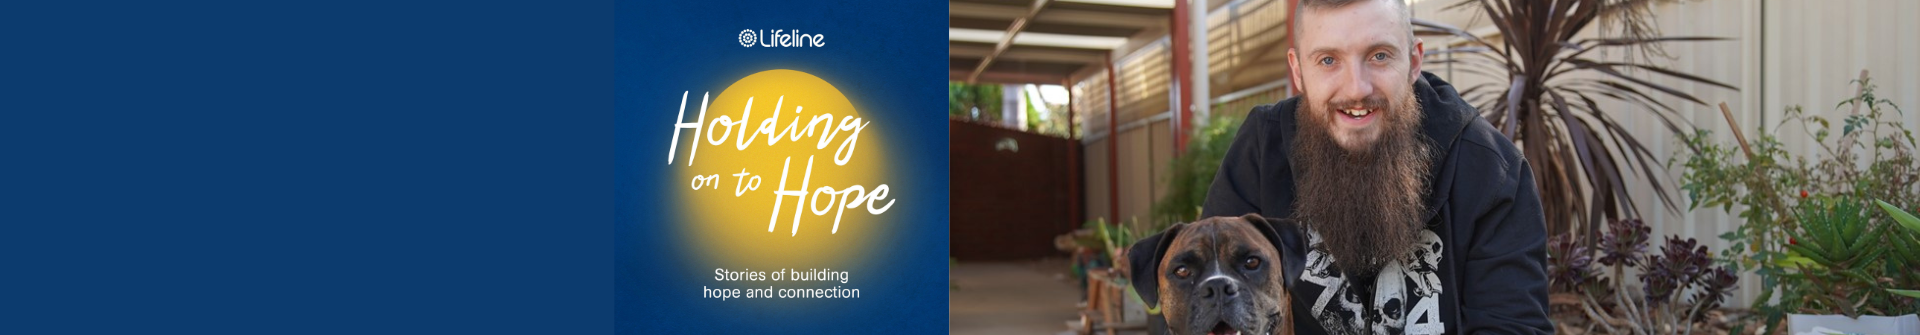 11 Holding onto hope podcast